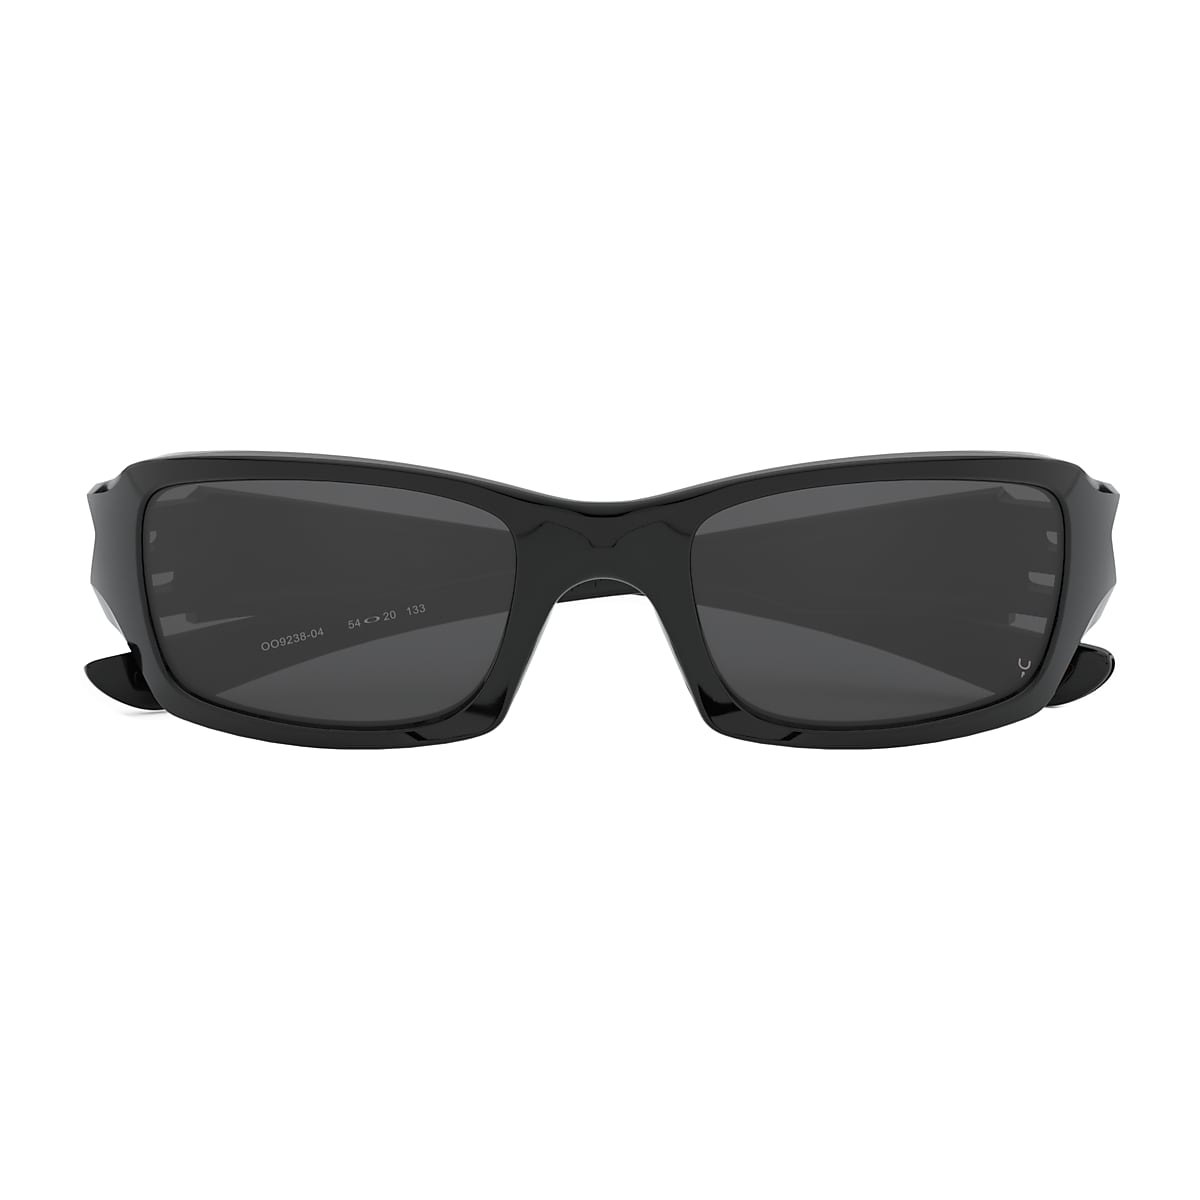 Fives Squared® Grey Lenses, Polished Black Frame Sunglasses | Oakley® GB